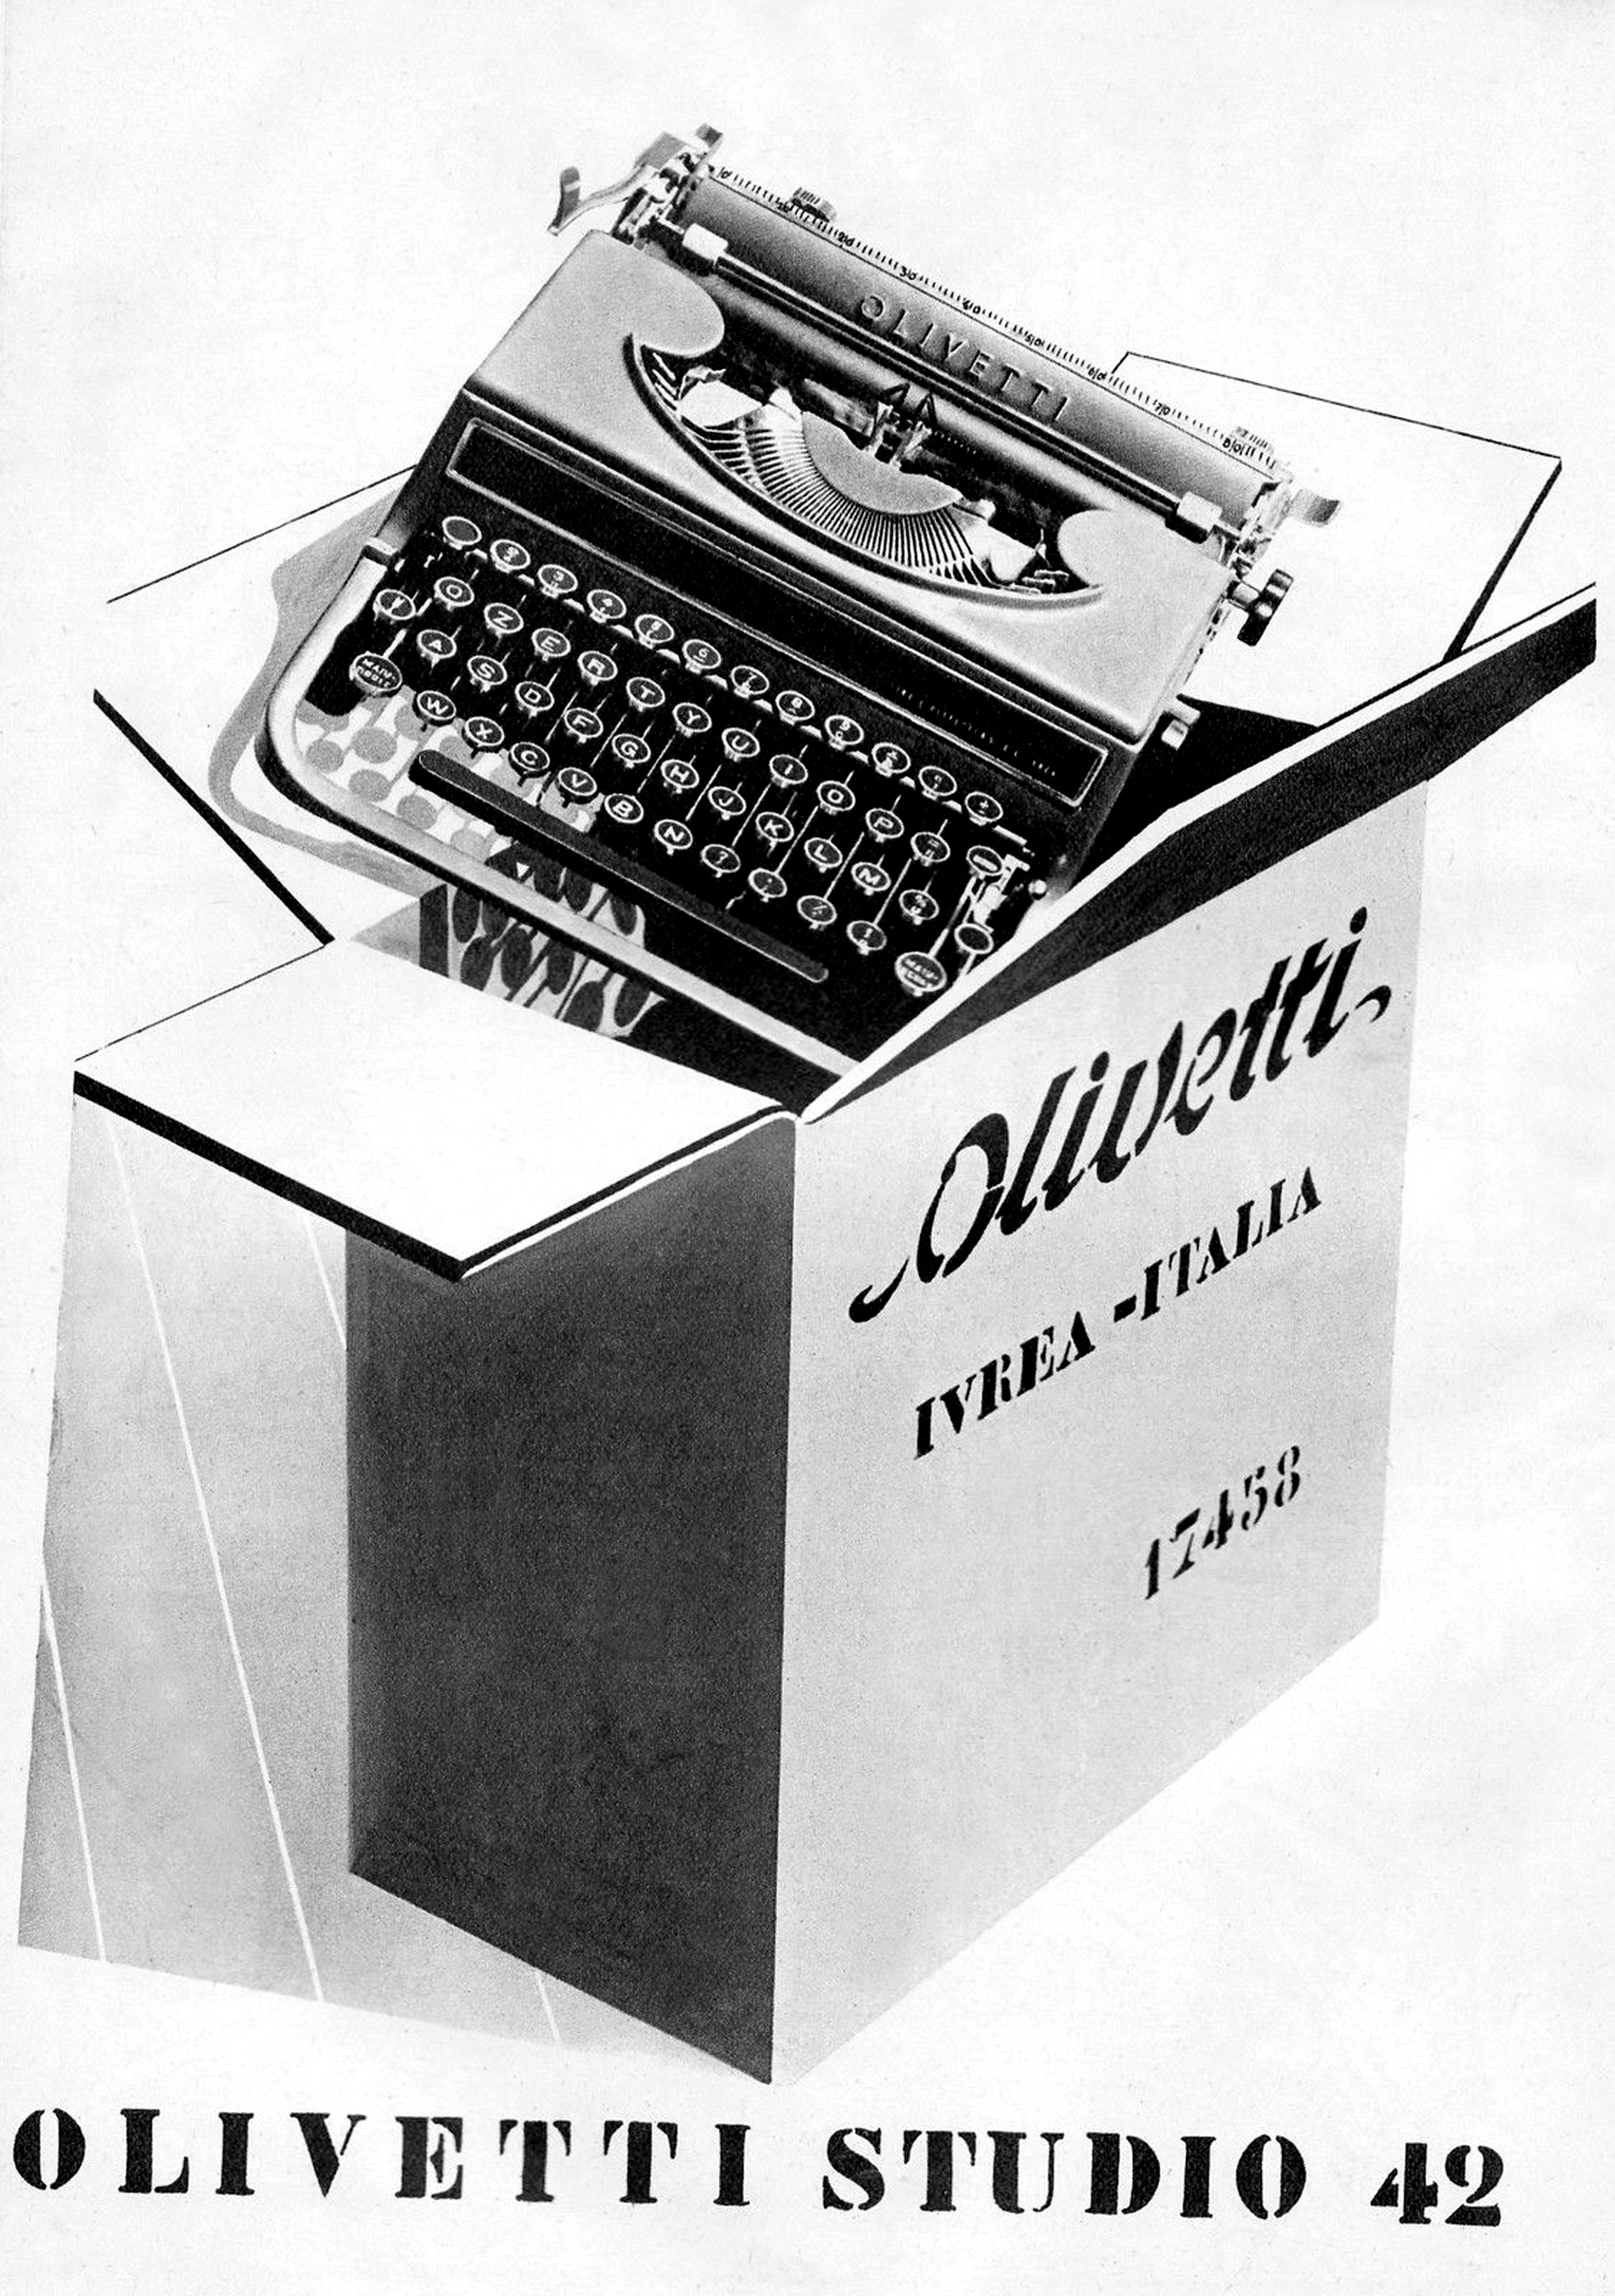 Pubblicità del modello di macchina Studio 42. Nel 1931 Adriano introduce in azienda il Servizio pubblicità, che si avvale del contributo di importanti artisti e designer